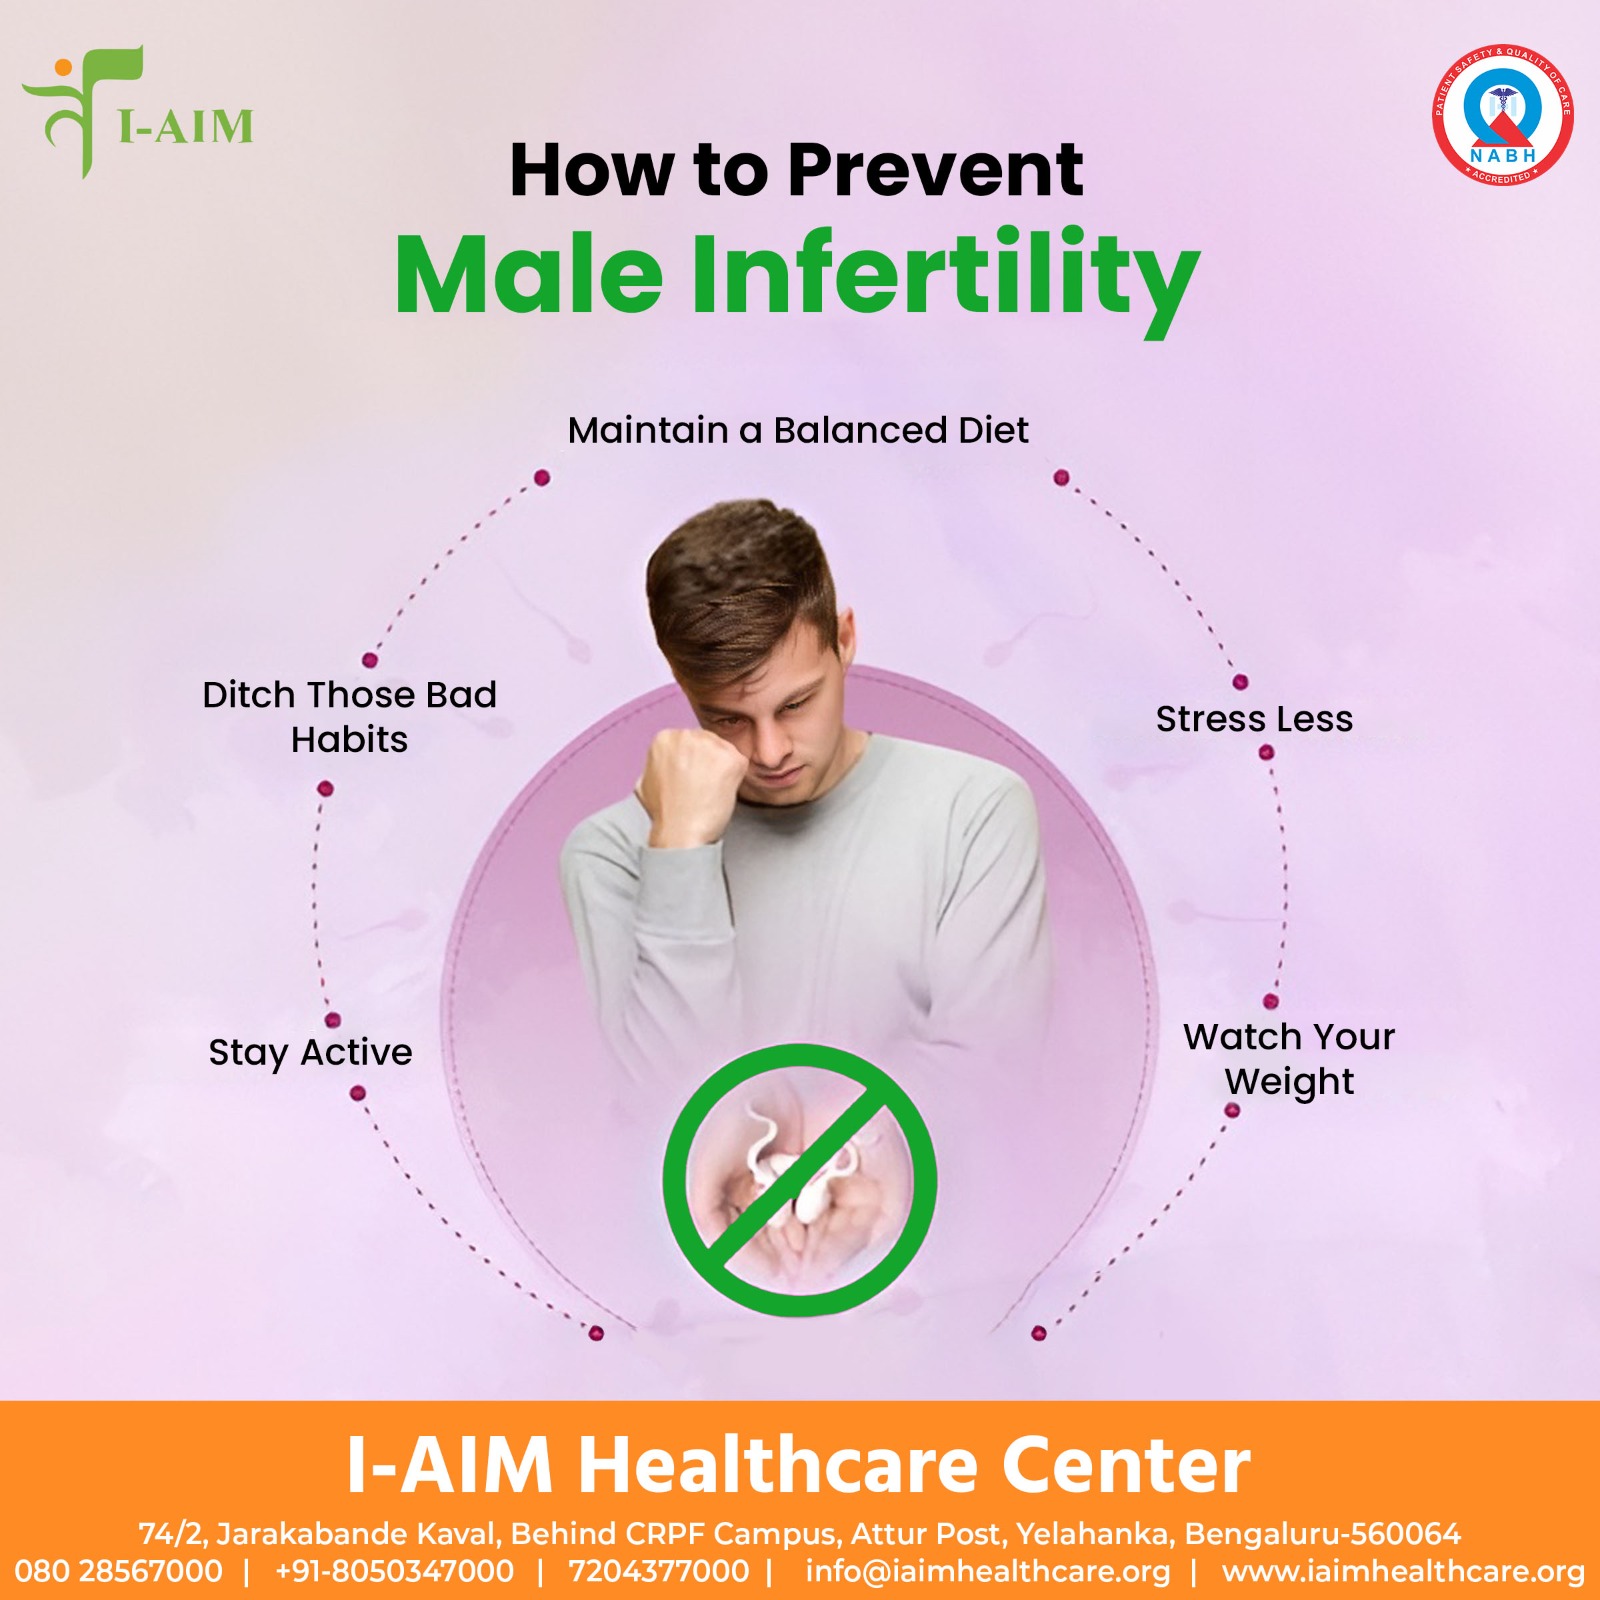 I-AIM Healthcare Center - Bengalurur 